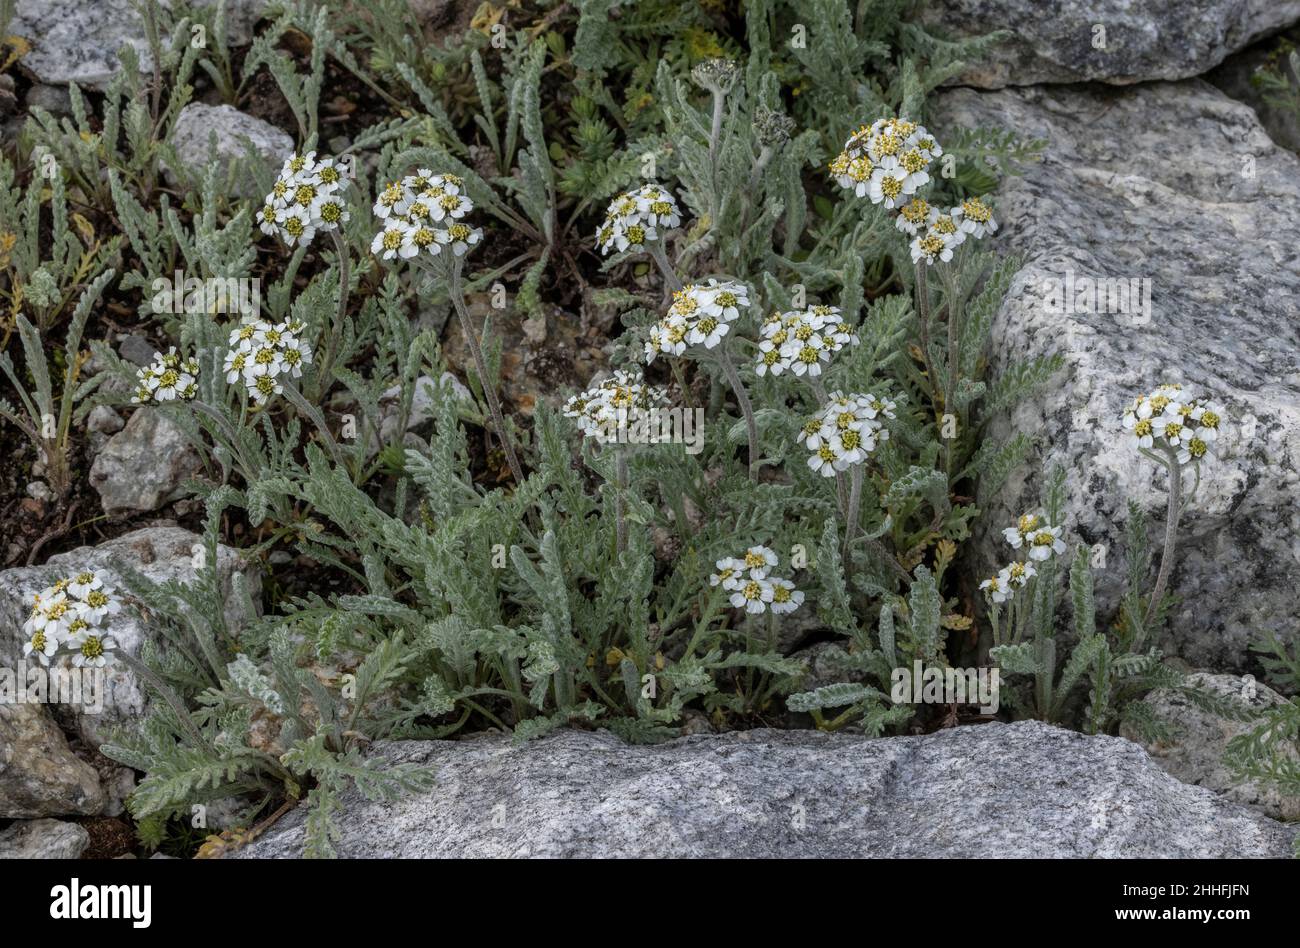 Dwarf Milfoil, Achillea nana, in flower in the Swiss Alps. Stock Photo